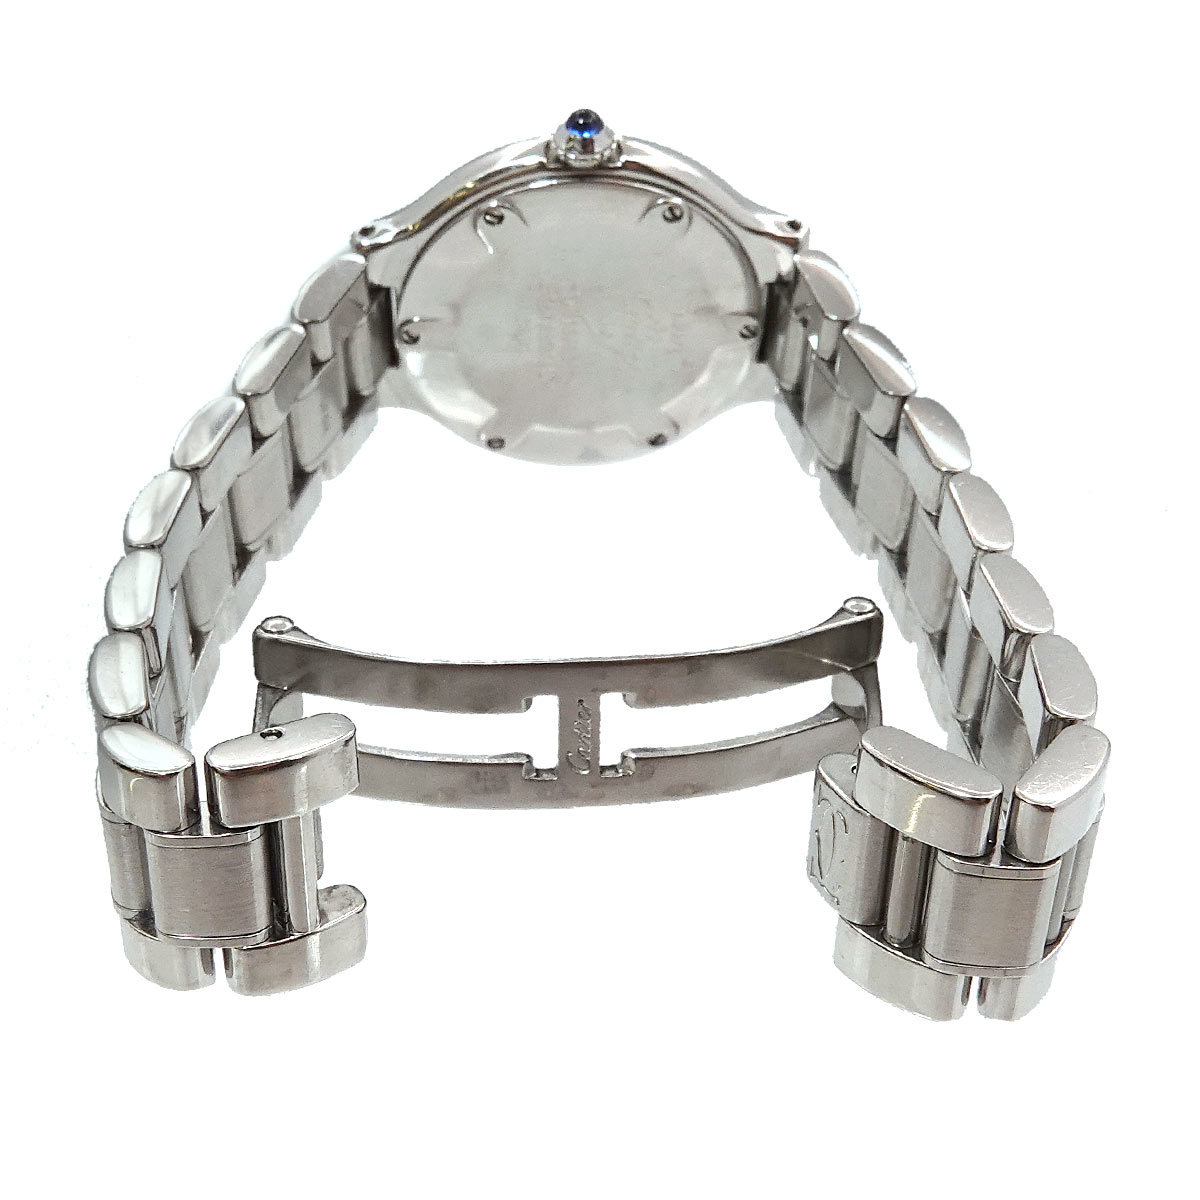  Cartier Cartier Must 21 Van ti Anne W10109T2 женские наручные часы серебряный циферблат кварц часы Must21 90220148